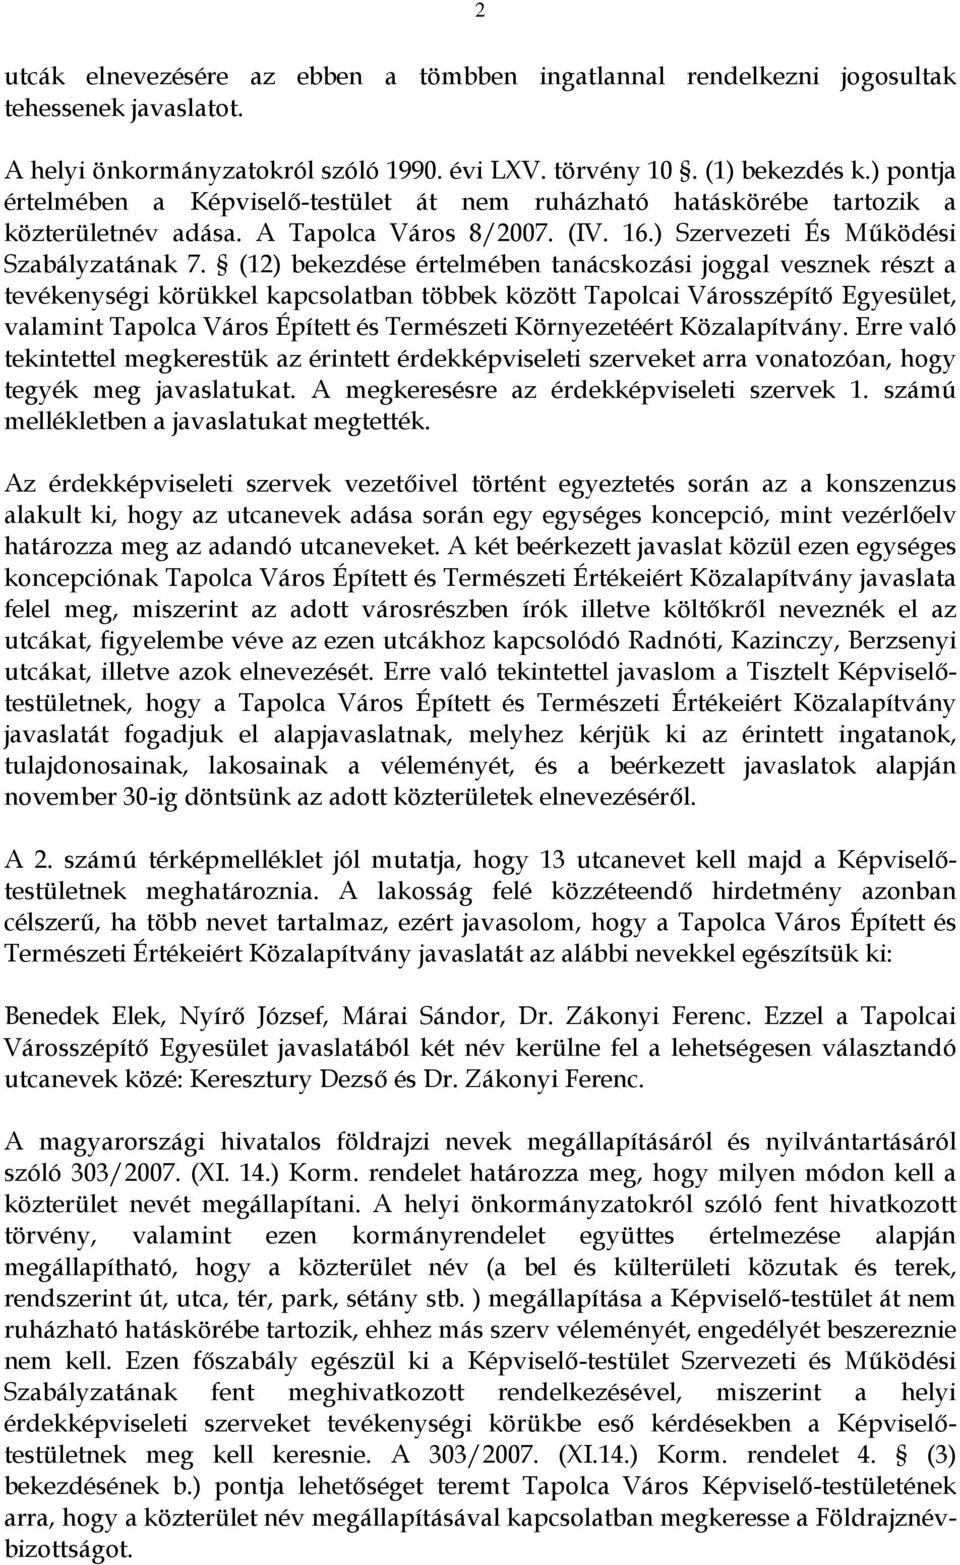 (12) bekezdése értelmében tanácskozási joggal vesznek részt a tevékenységi körükkel kapcsolatban többek között Tapolcai Városszépítő Egyesület, valamint Tapolca Város Épített és Természeti